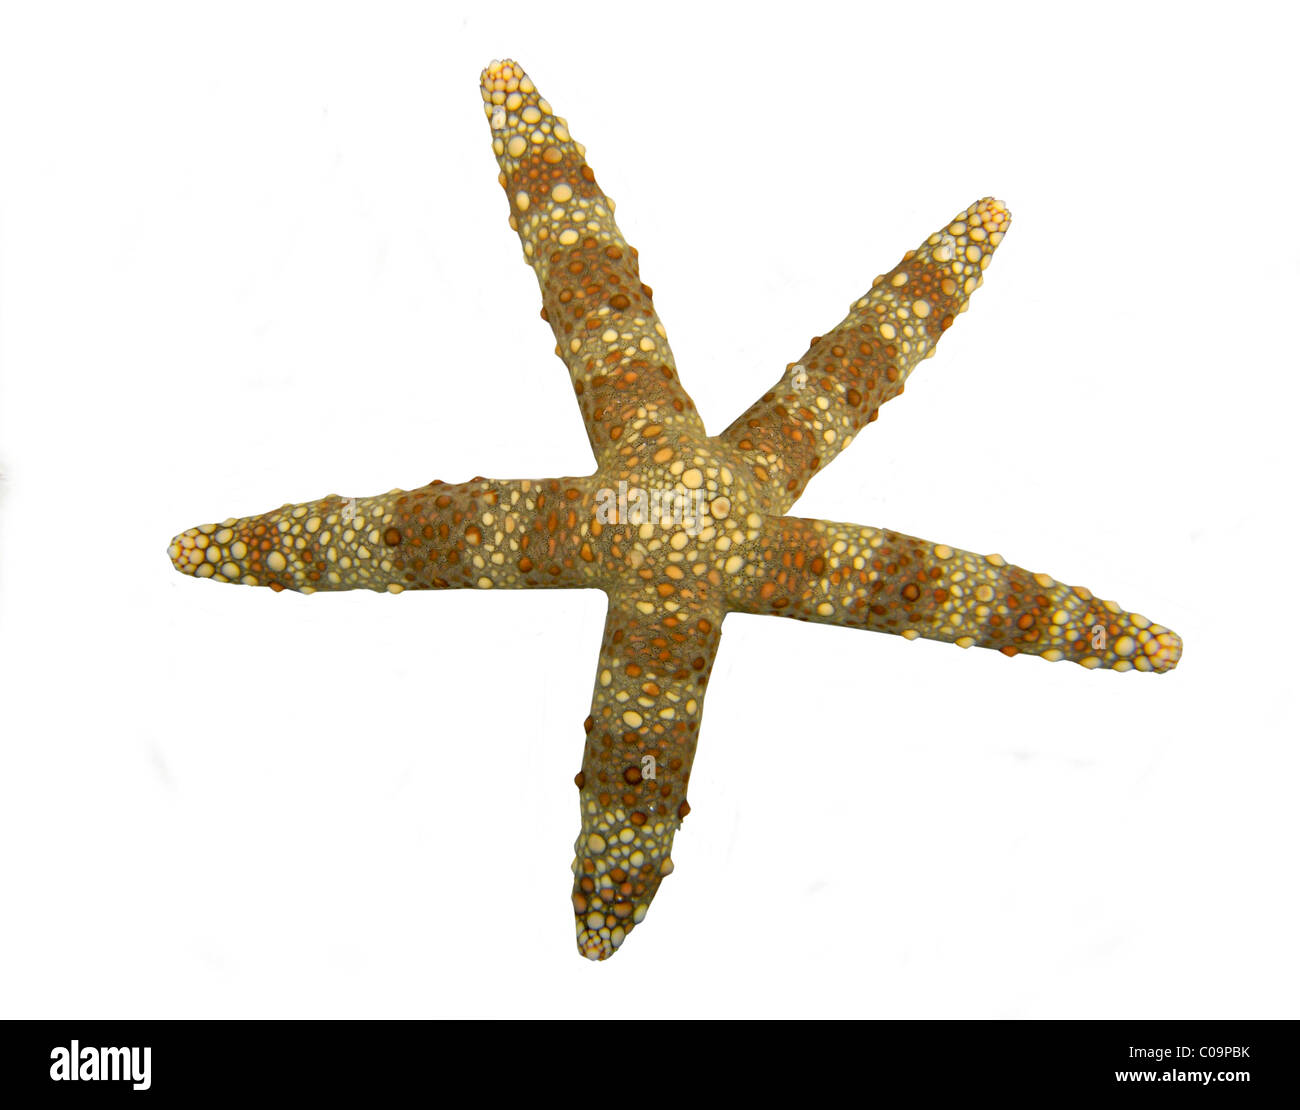 Di spessore di pelle chiara stella di mare (Echinaster callosus) Foto Stock